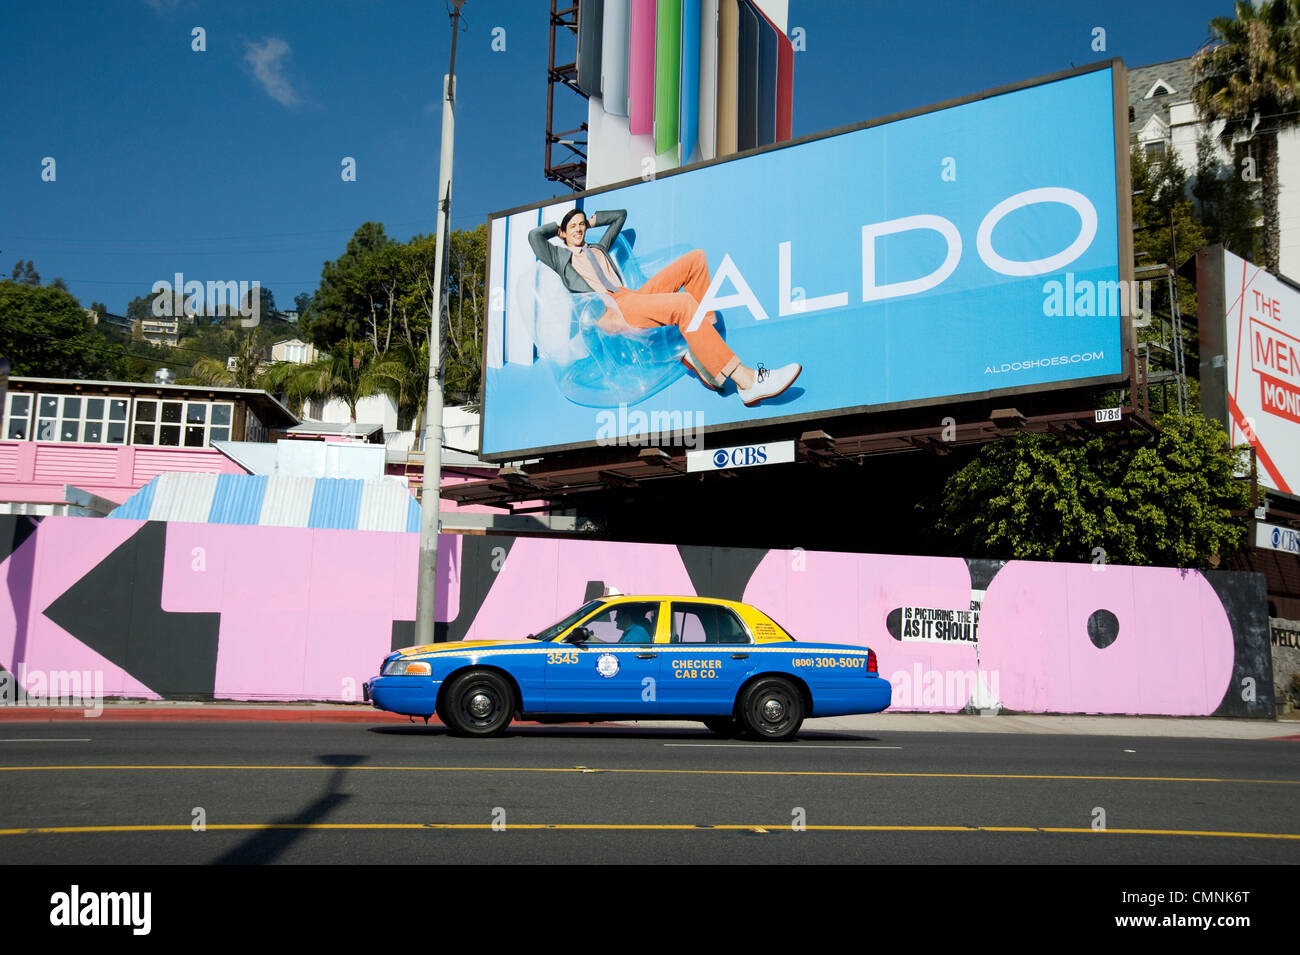 Sunset Strip, à West Hollywood avec taxi et de panneaux pour Les Chaussures Aldo circa 2012 Banque D'Images